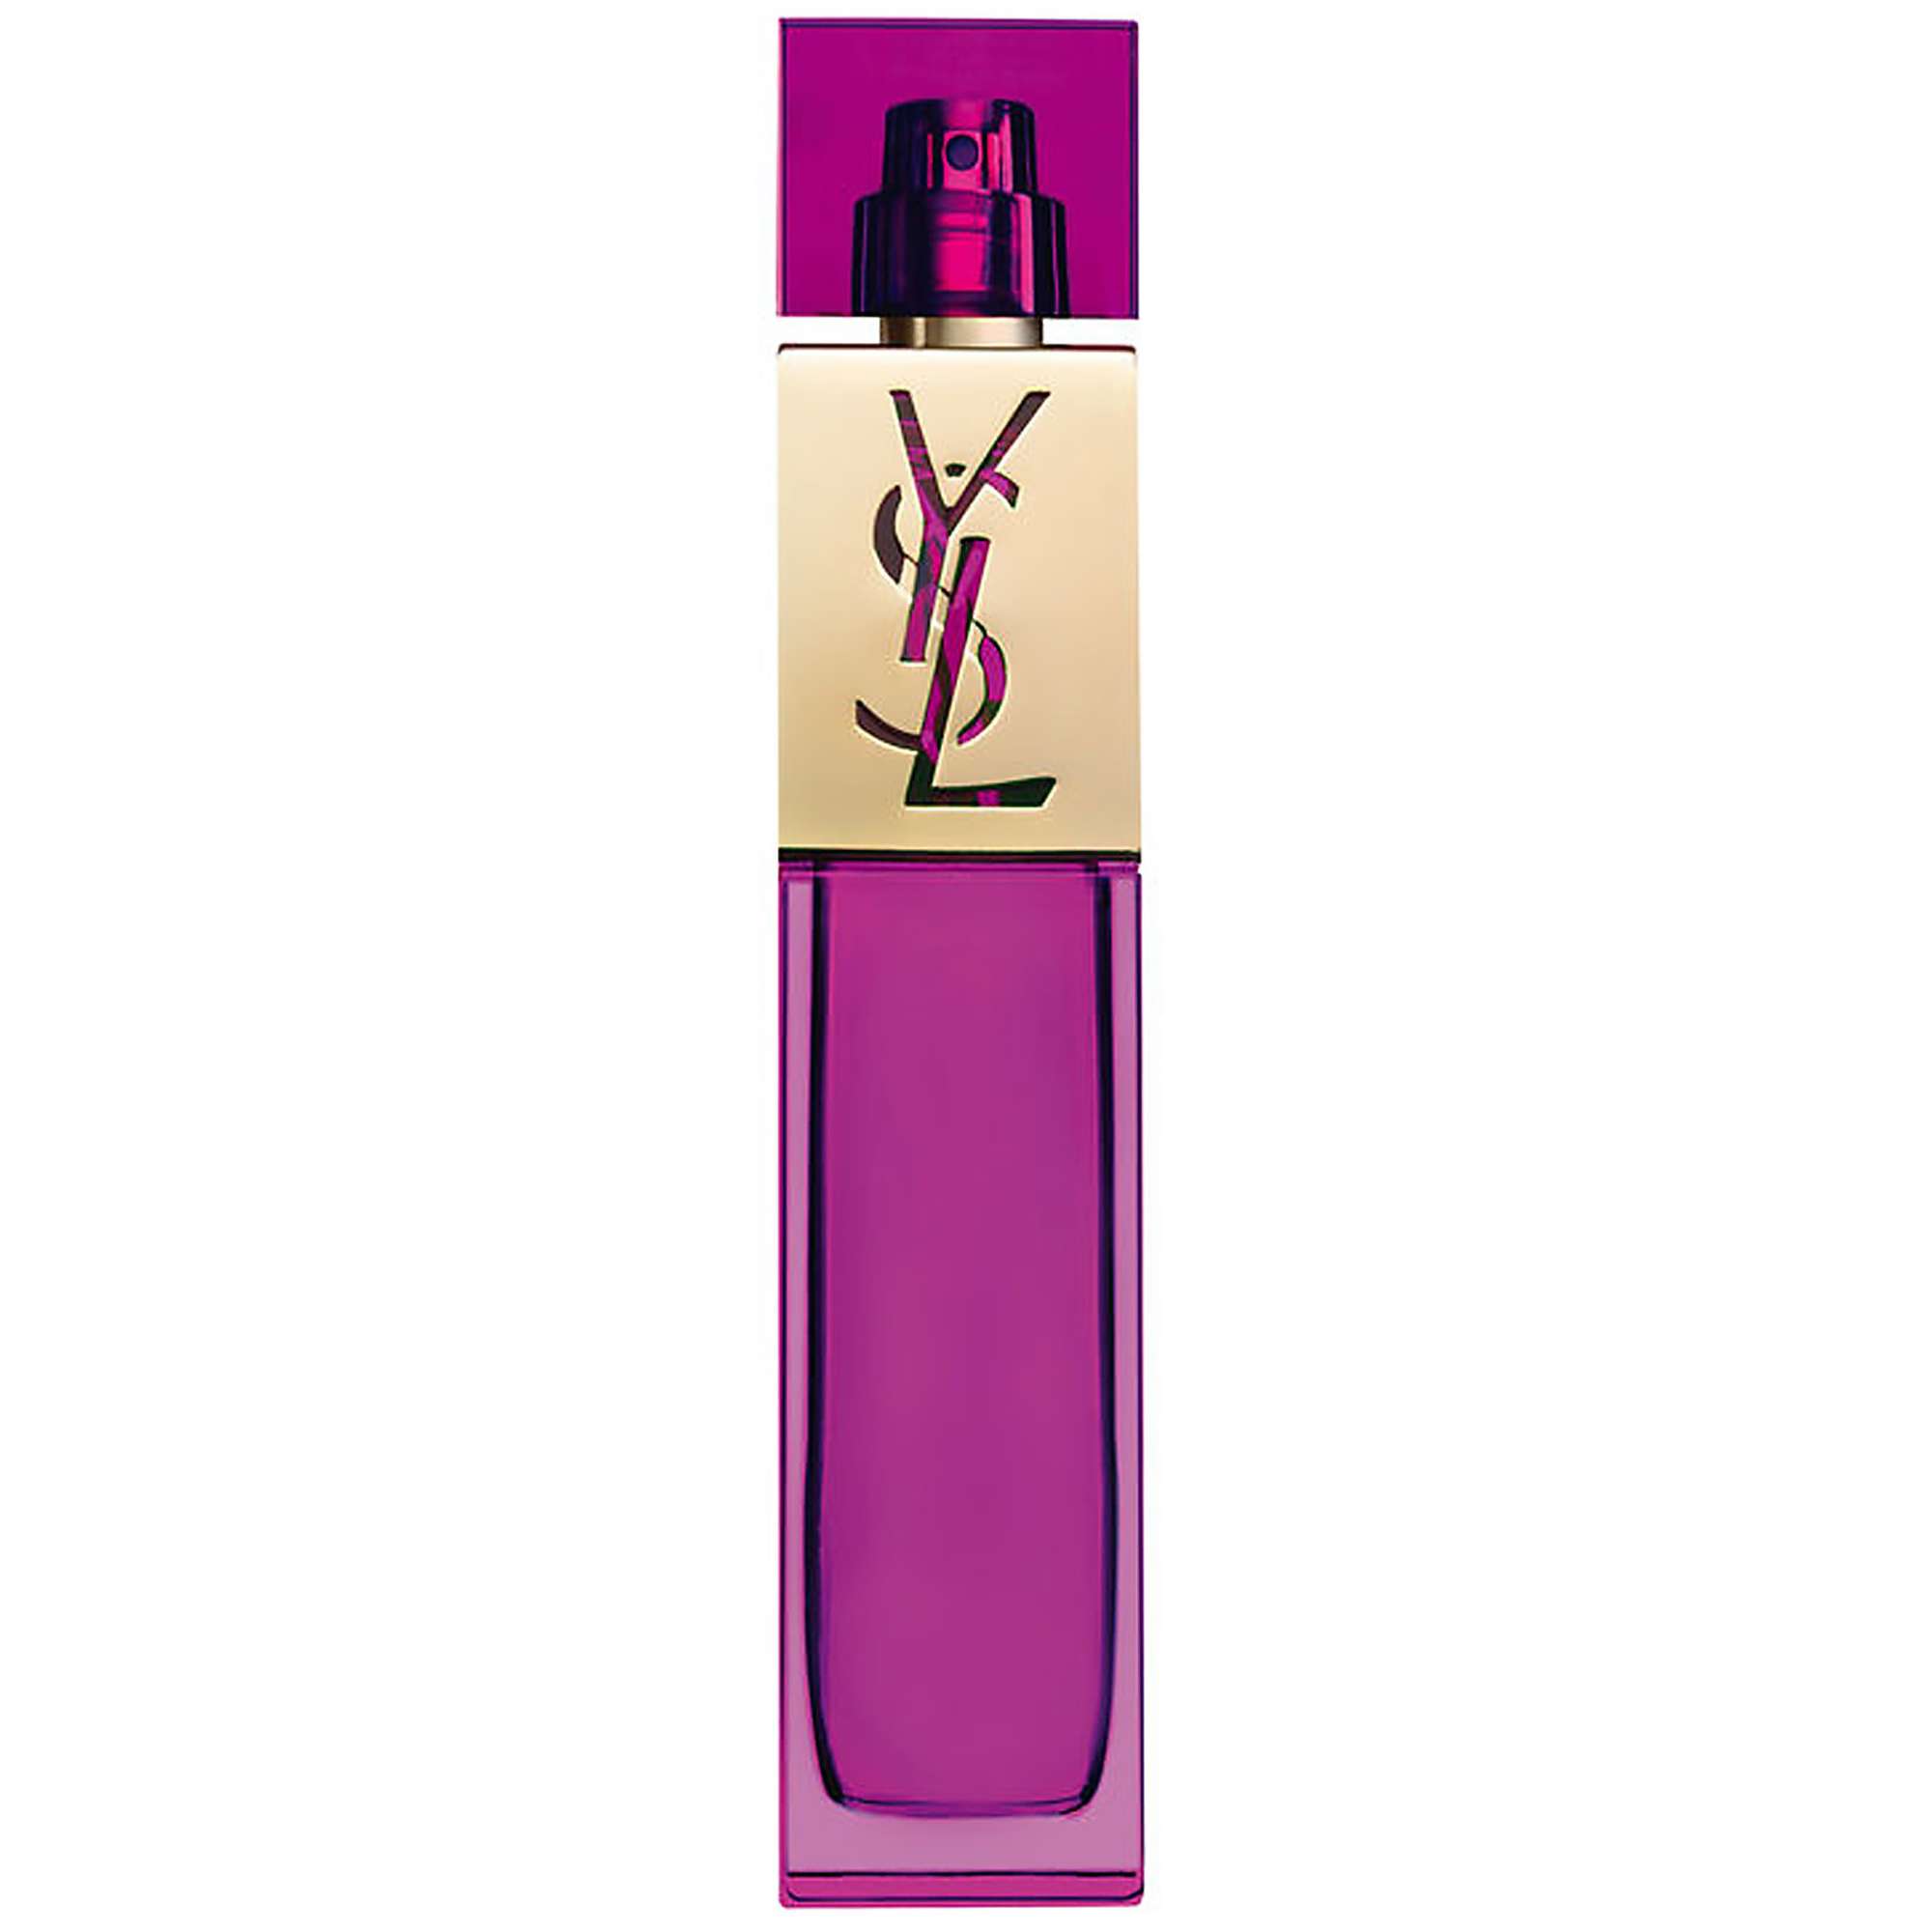 Photos - Women's Fragrance Yves Saint Laurent Elle Eau de Parfum Spray 90ml 